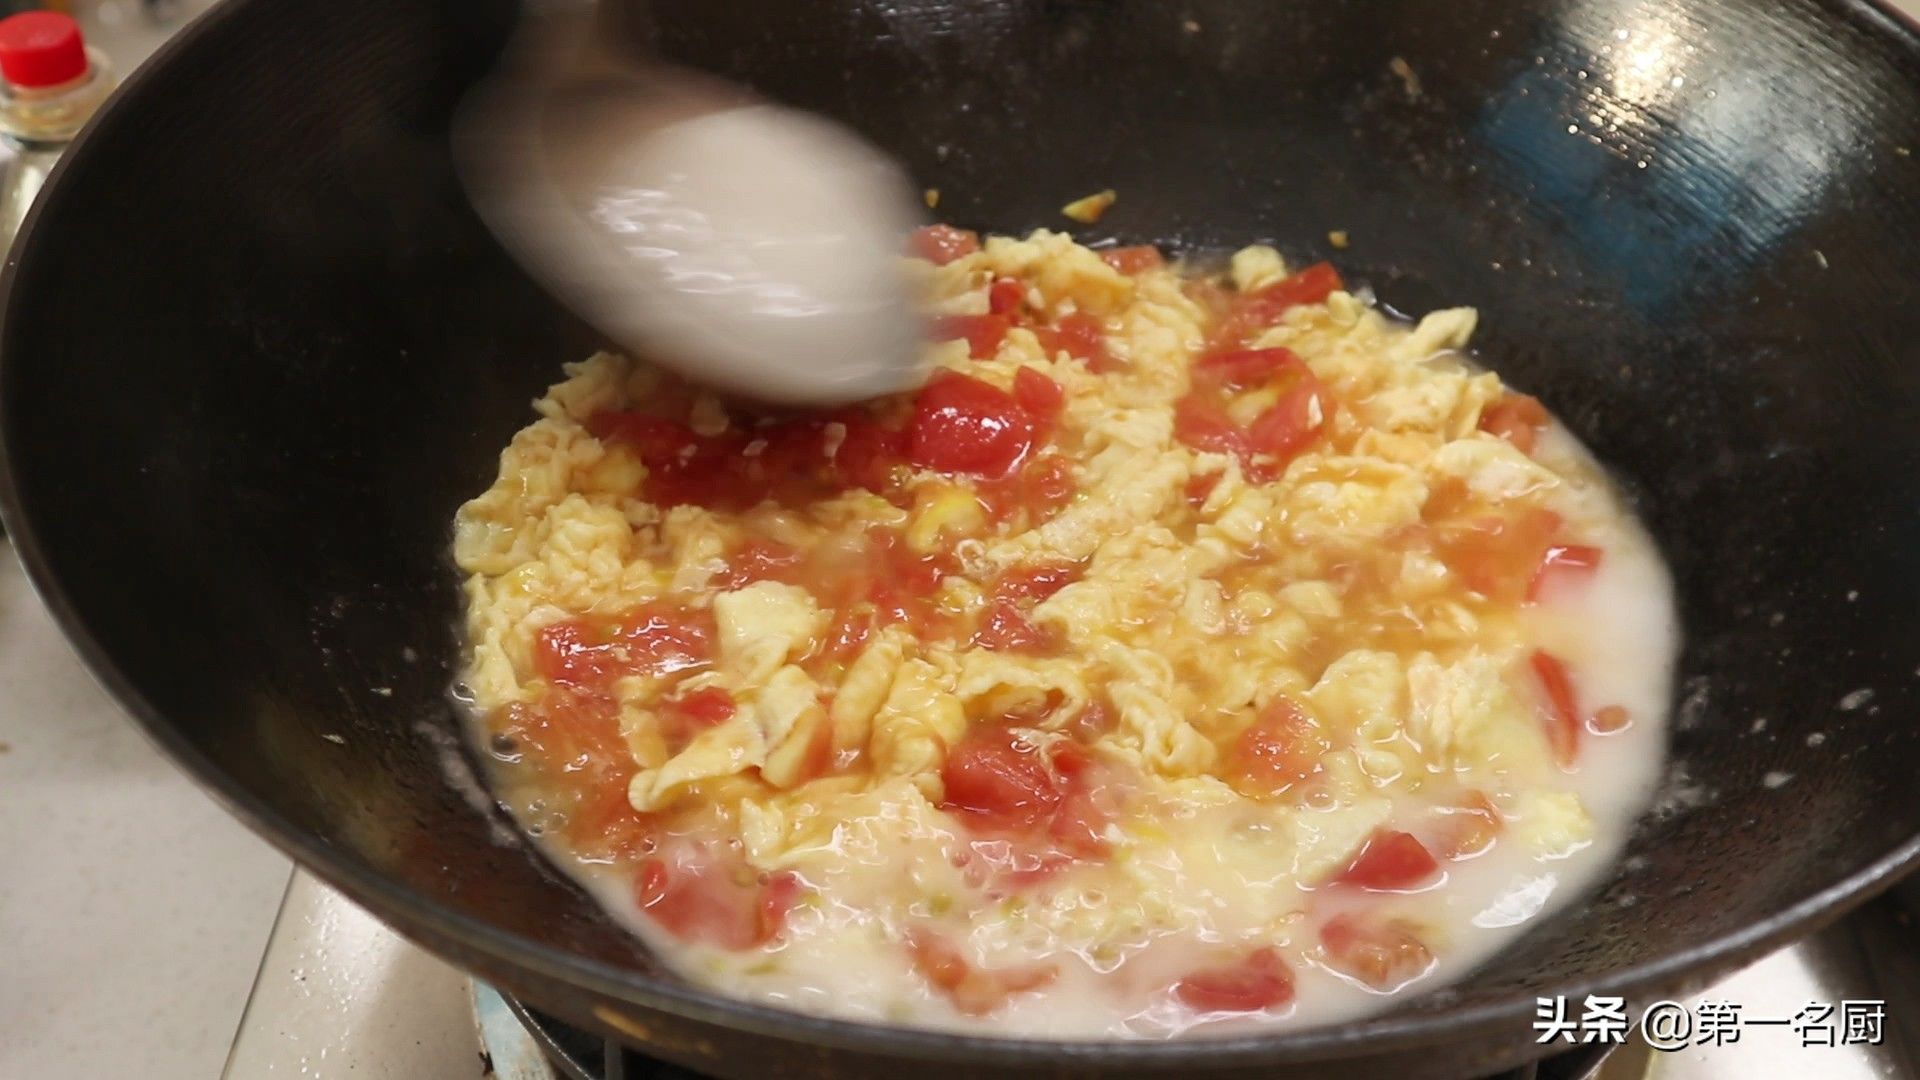 番茄炒蛋盖浇饭（西红柿鸡蛋盖浇饭”的家常做法）-第10张图片